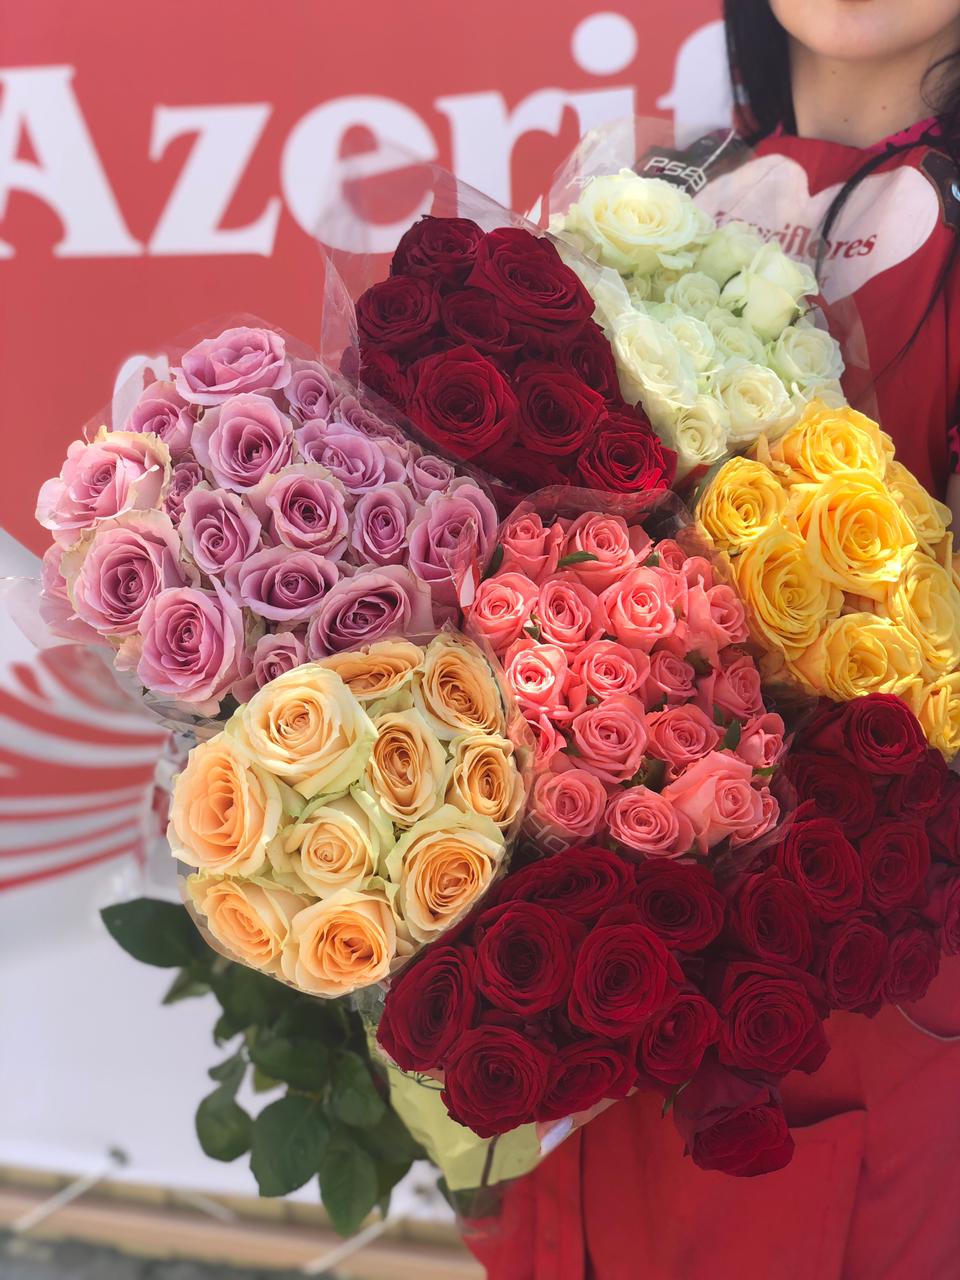 Купить свежие розы по акции за 80 рублей